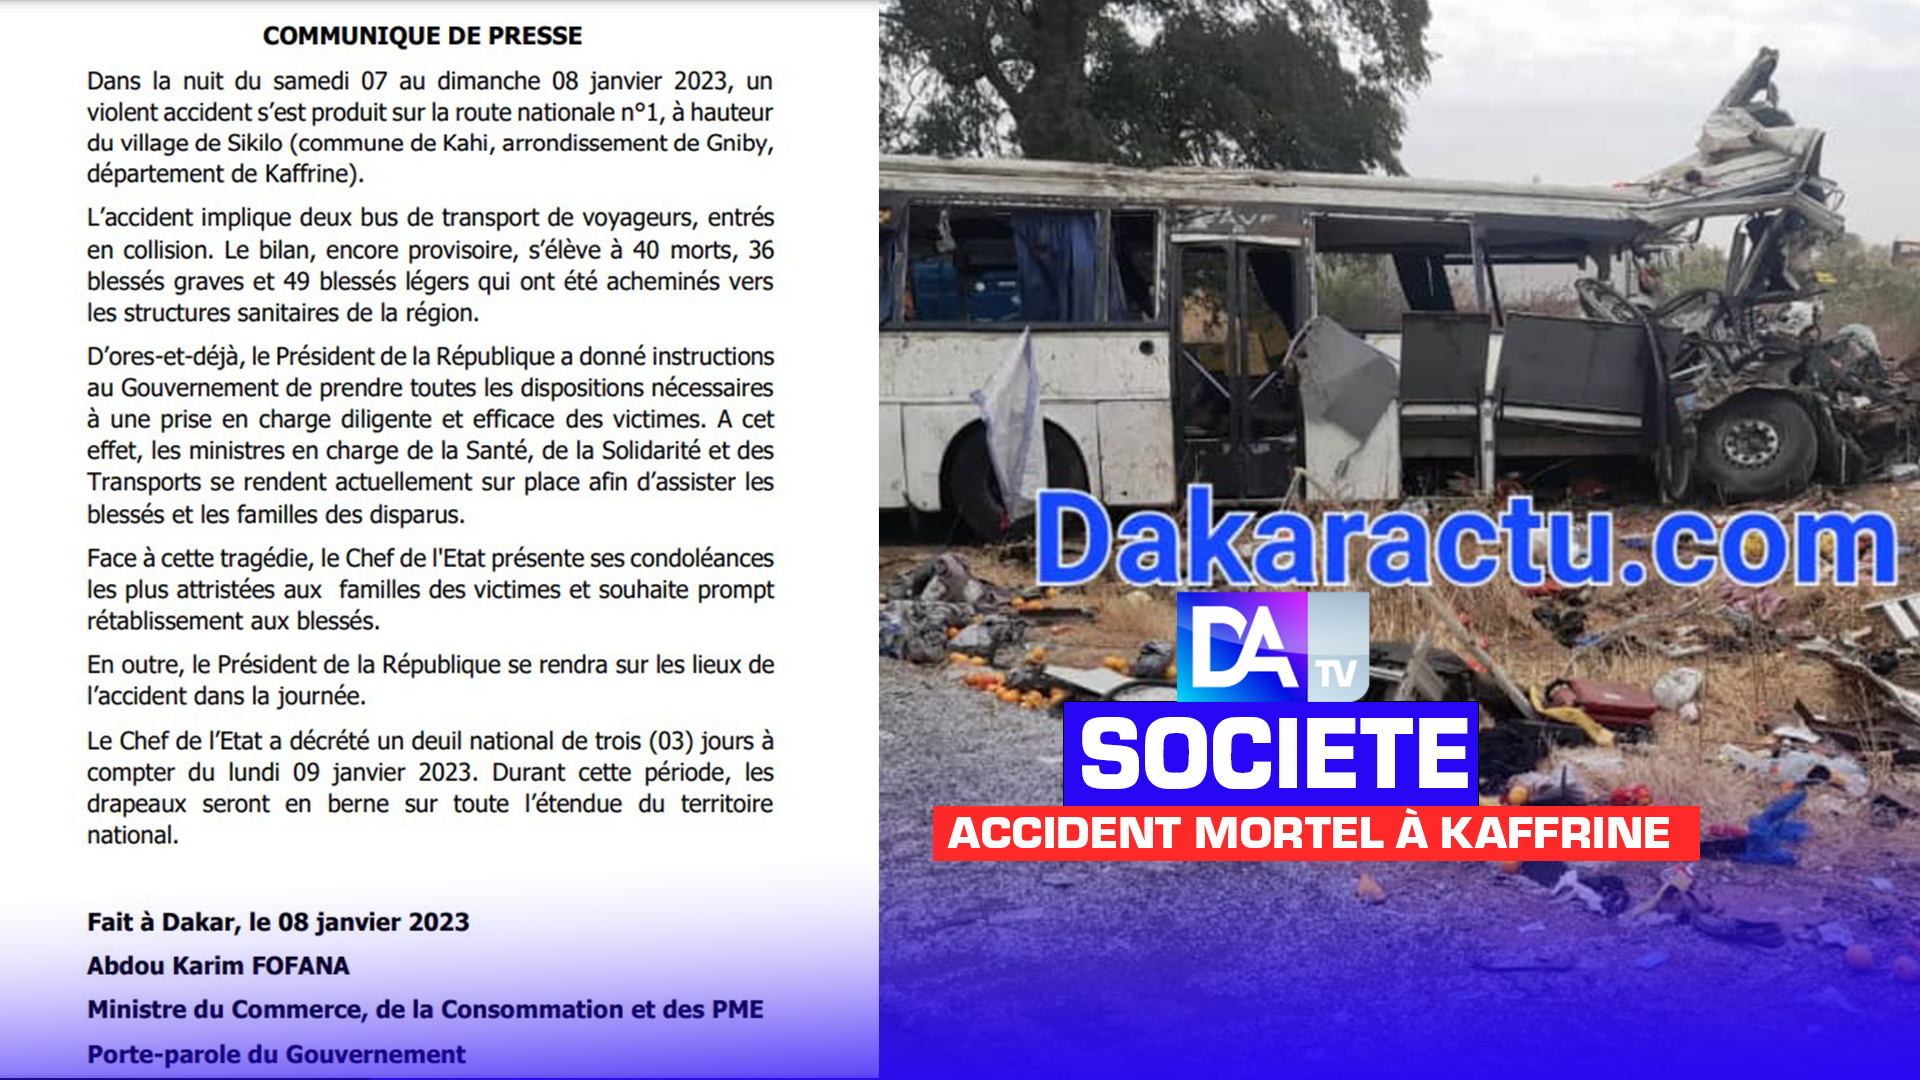 Accident mortel à Kaffrine : Le bilan provisoire est de 40 morts, selon le gouvernement...